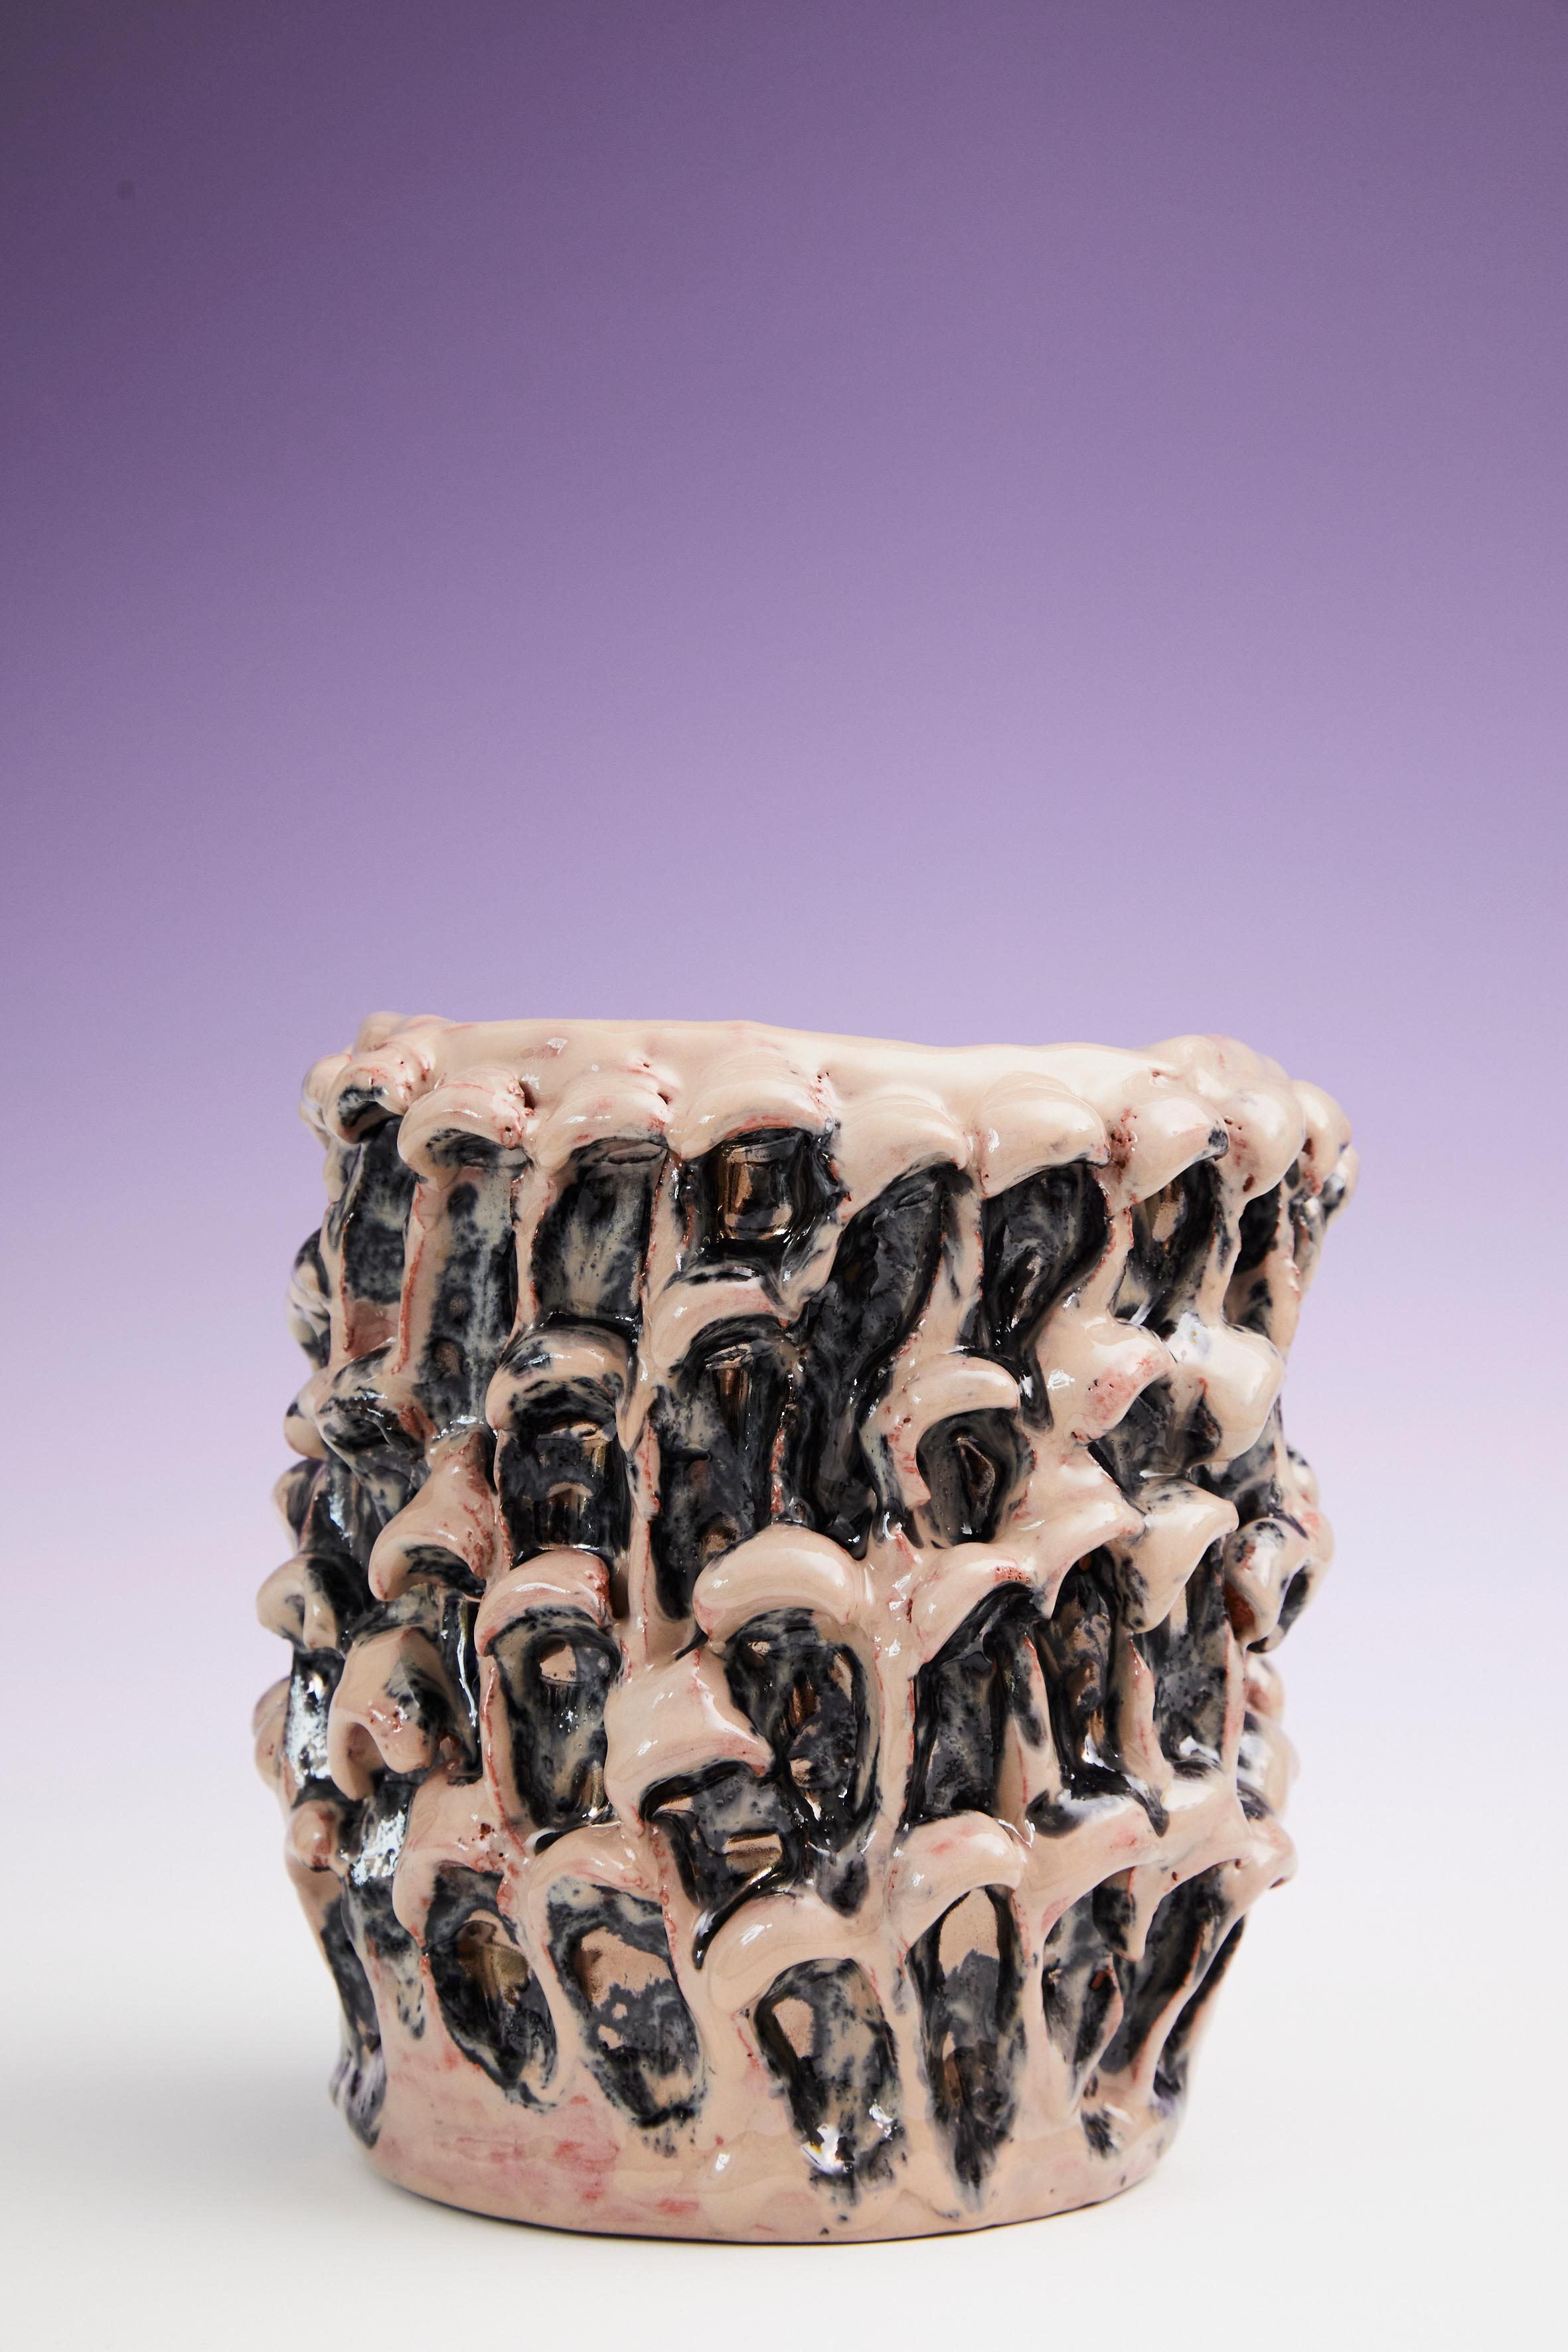 Onda Vase in metallischem Mineralbusch 01 / 20 nummerierte Serie
Einzigartiges handgefertigtes Stück
Glasiertes Steingut von Daria Dazzan
Steingut, Glasuren
Maße: 17 X 21 cm ab.

Handgefertigte Steingutvase von Daria Dazzan, Einzelstück,